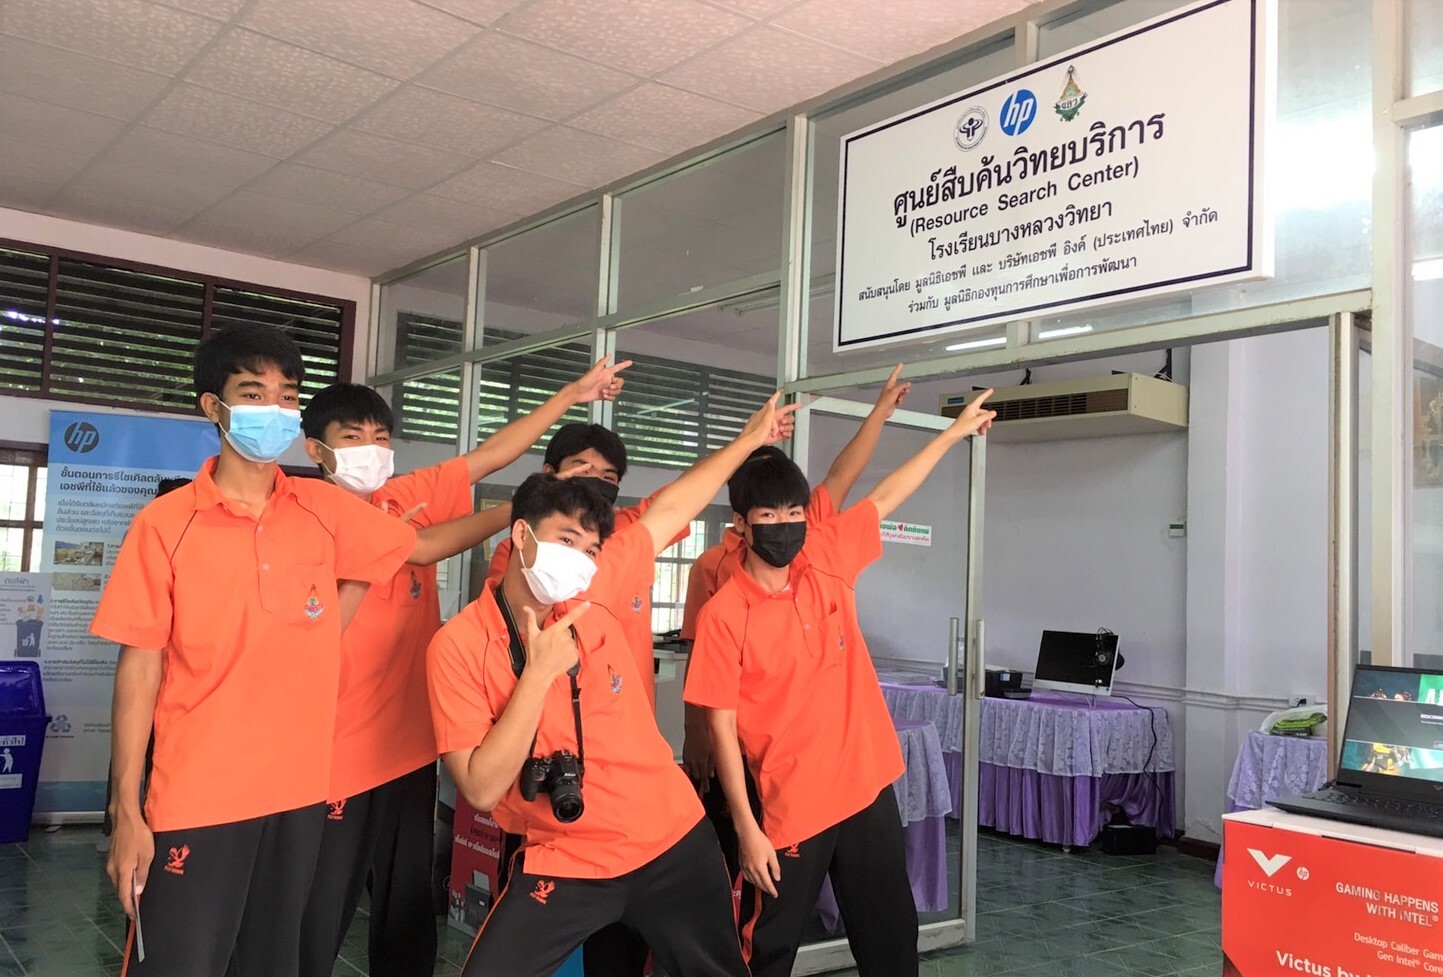 เอชพี อิงค์ (ประเทศไทย) และมูลนิธิเอชพี ร่วมกับมูลนิธิ EDF ส่งเสริมการเรียนรู้ มอบอุปกรณ์ไอซีทีให้โรงเรียนพื้นที่ห่างไกล